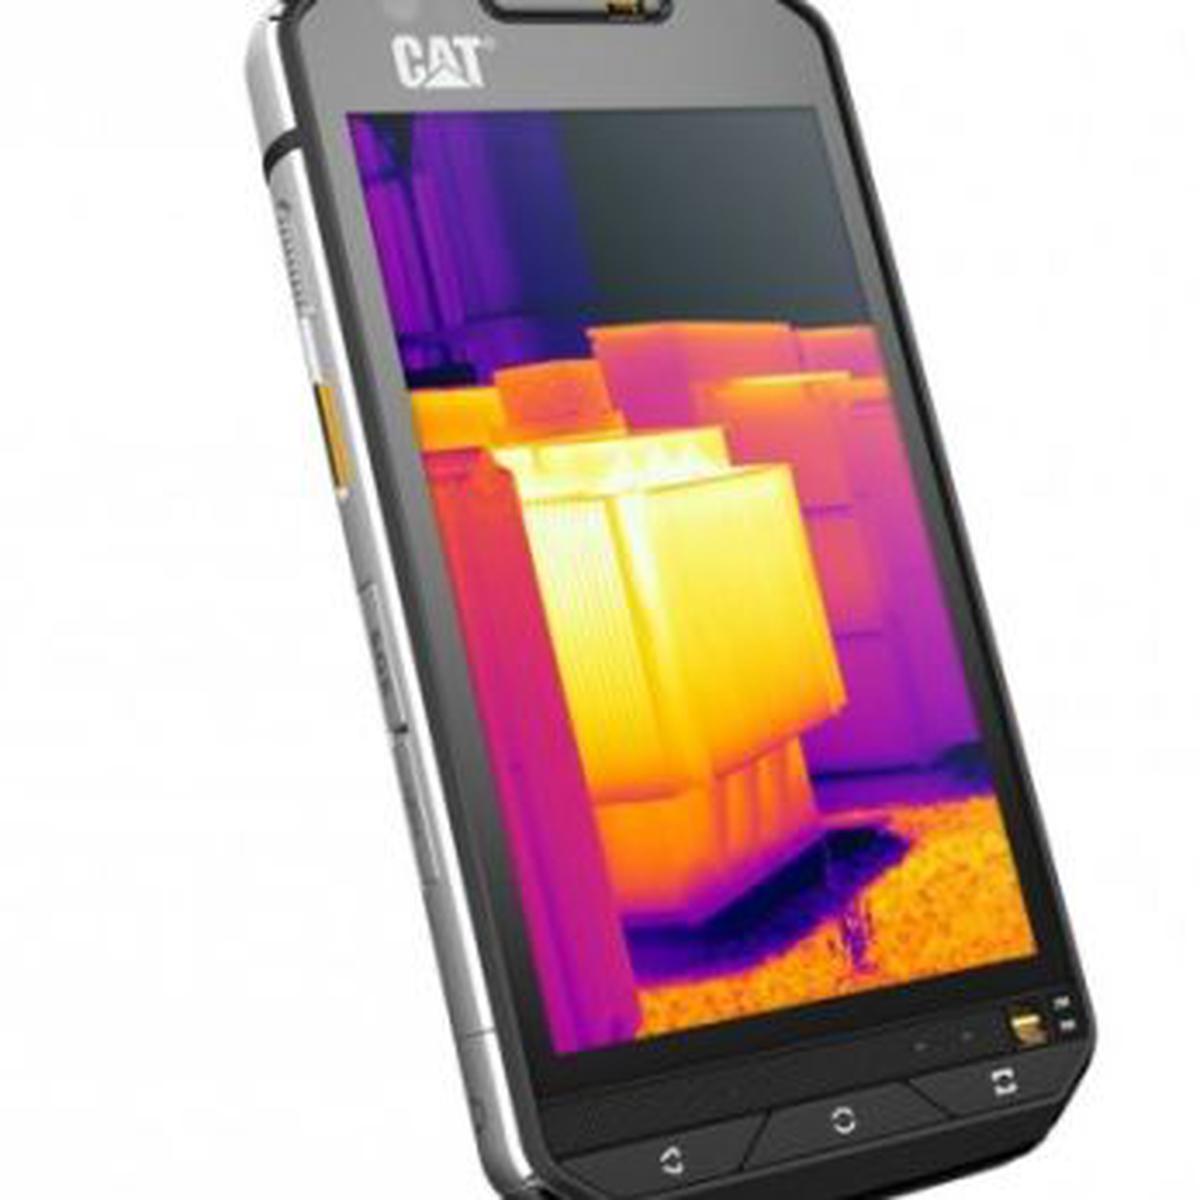 MWC 2016: CAT S60, el primer smartphone con cámara térmica